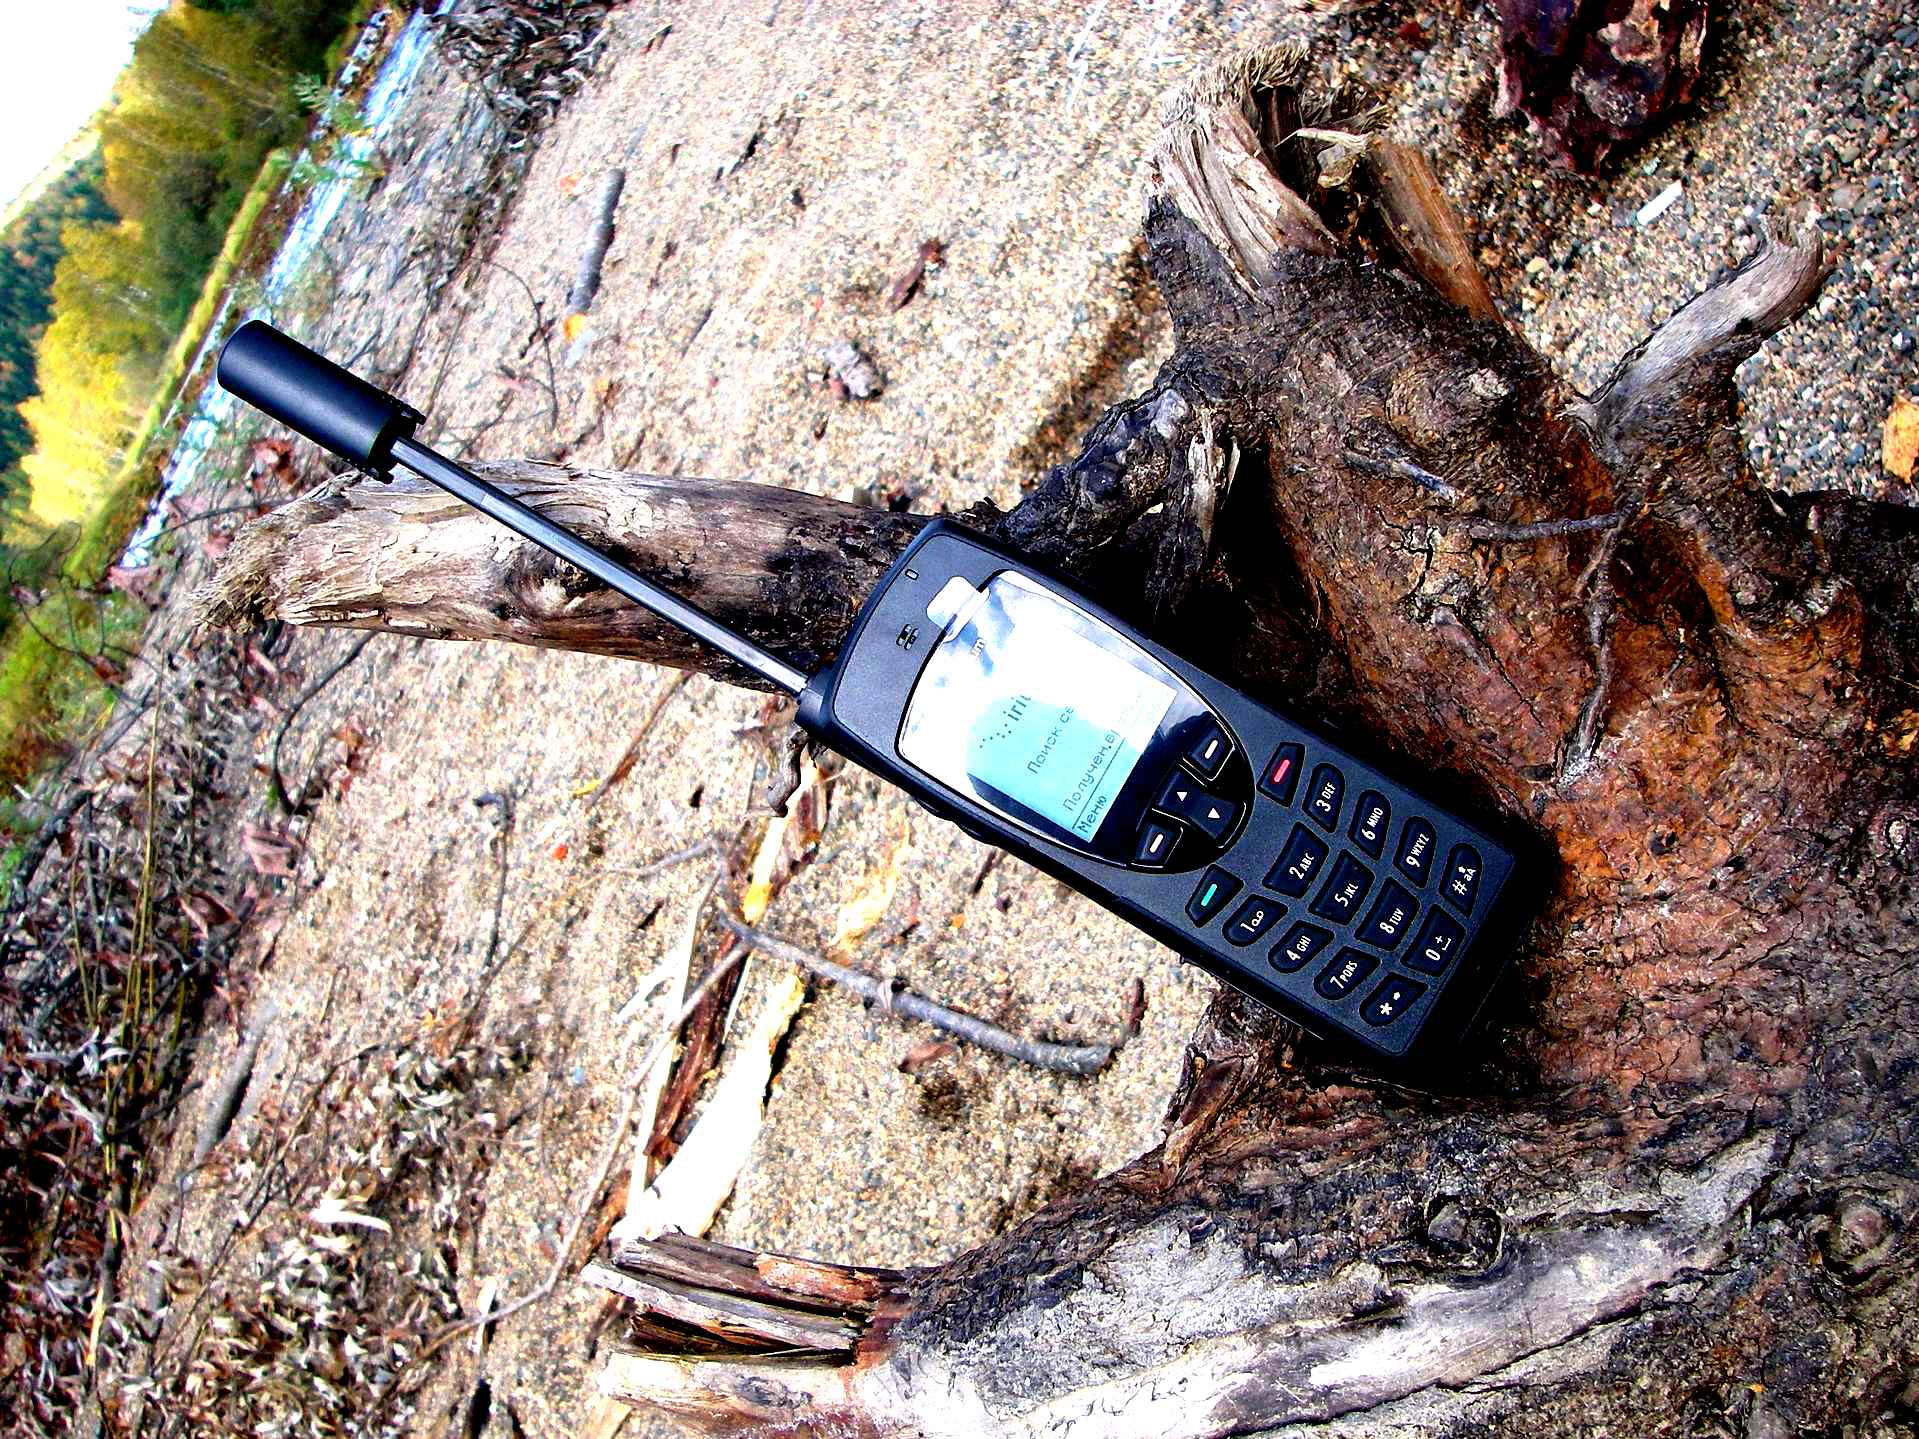 Б пит. Спутниковый телефон 1993. Спутниковый телефон Турая в горах. Спутниковый телефон 2000 года. Прикол со спутниковым телефоном.